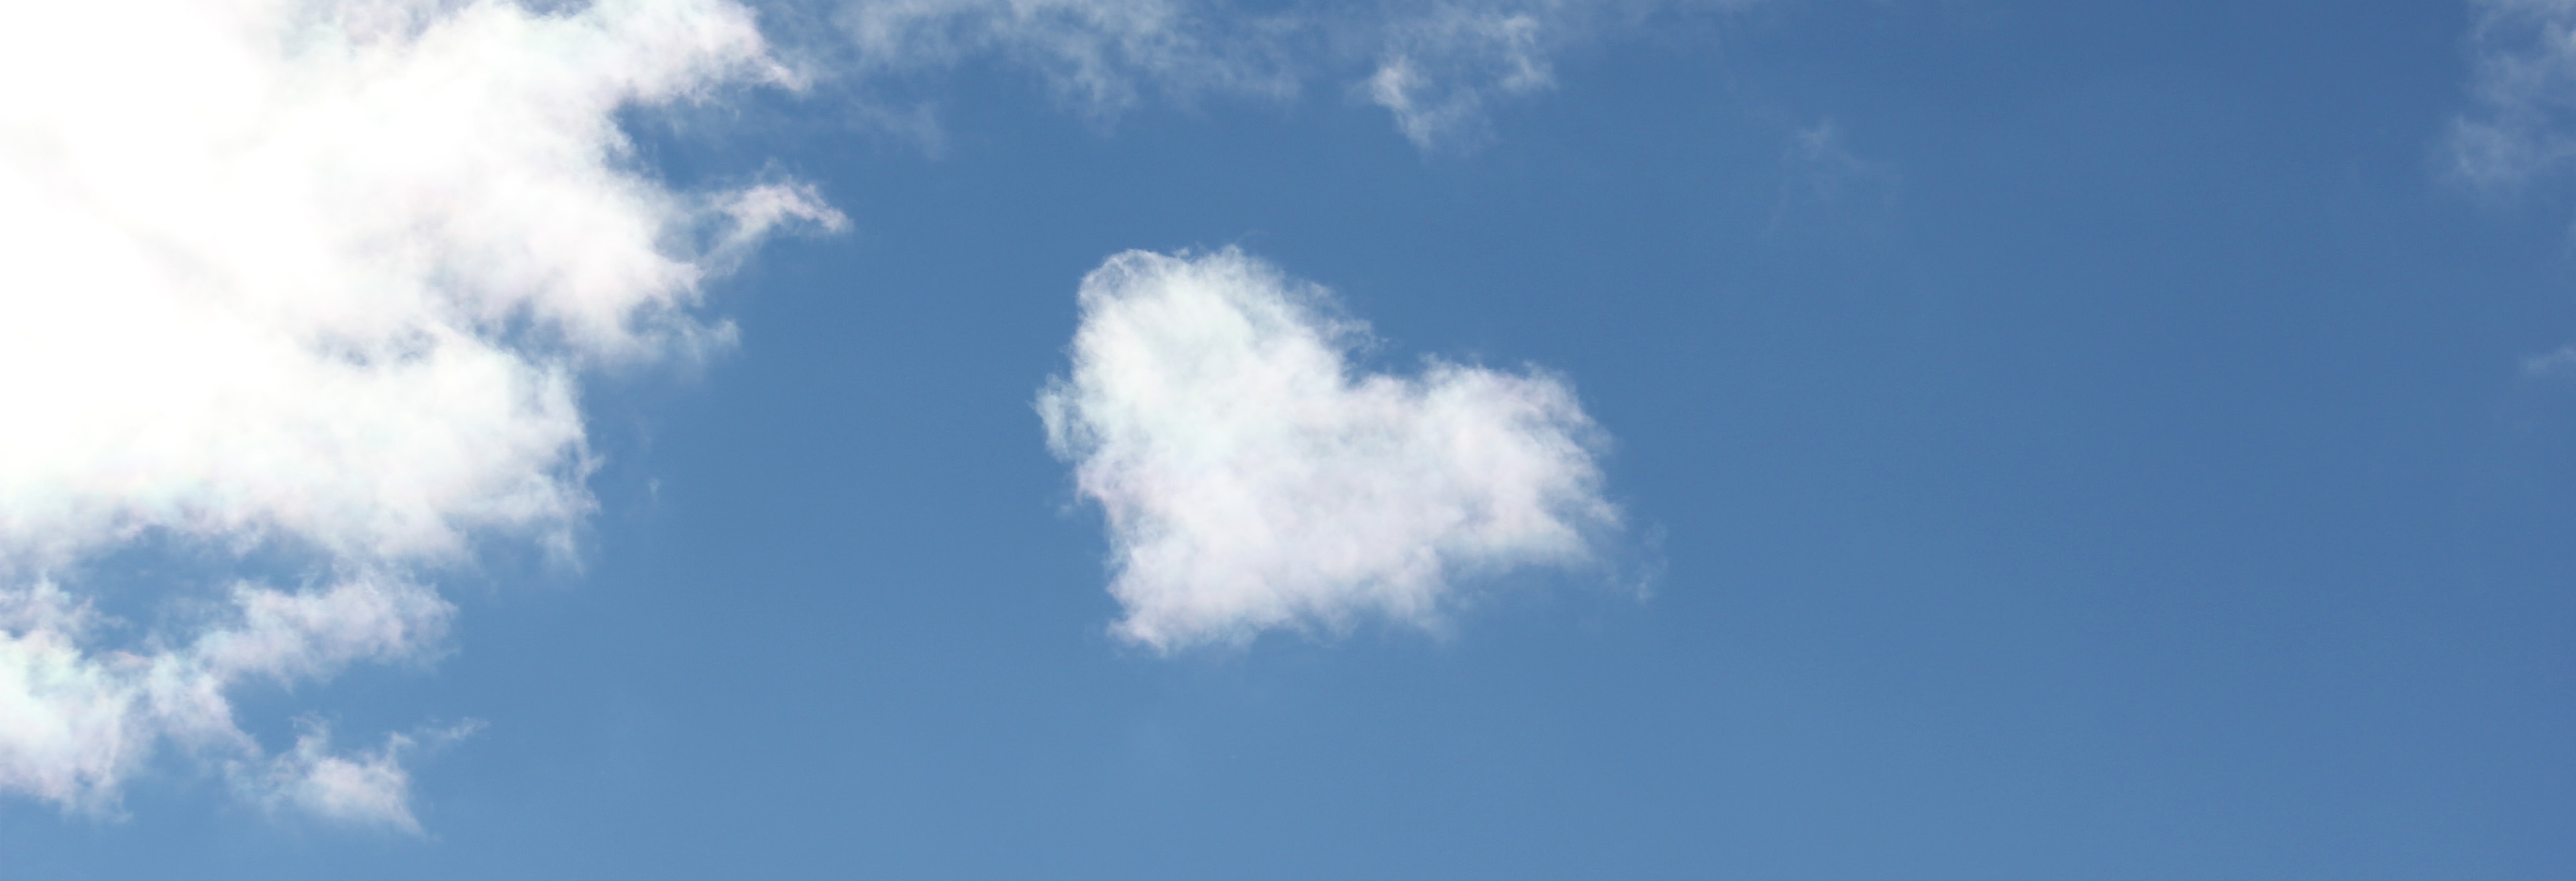 heart shaped cloud in blue sky